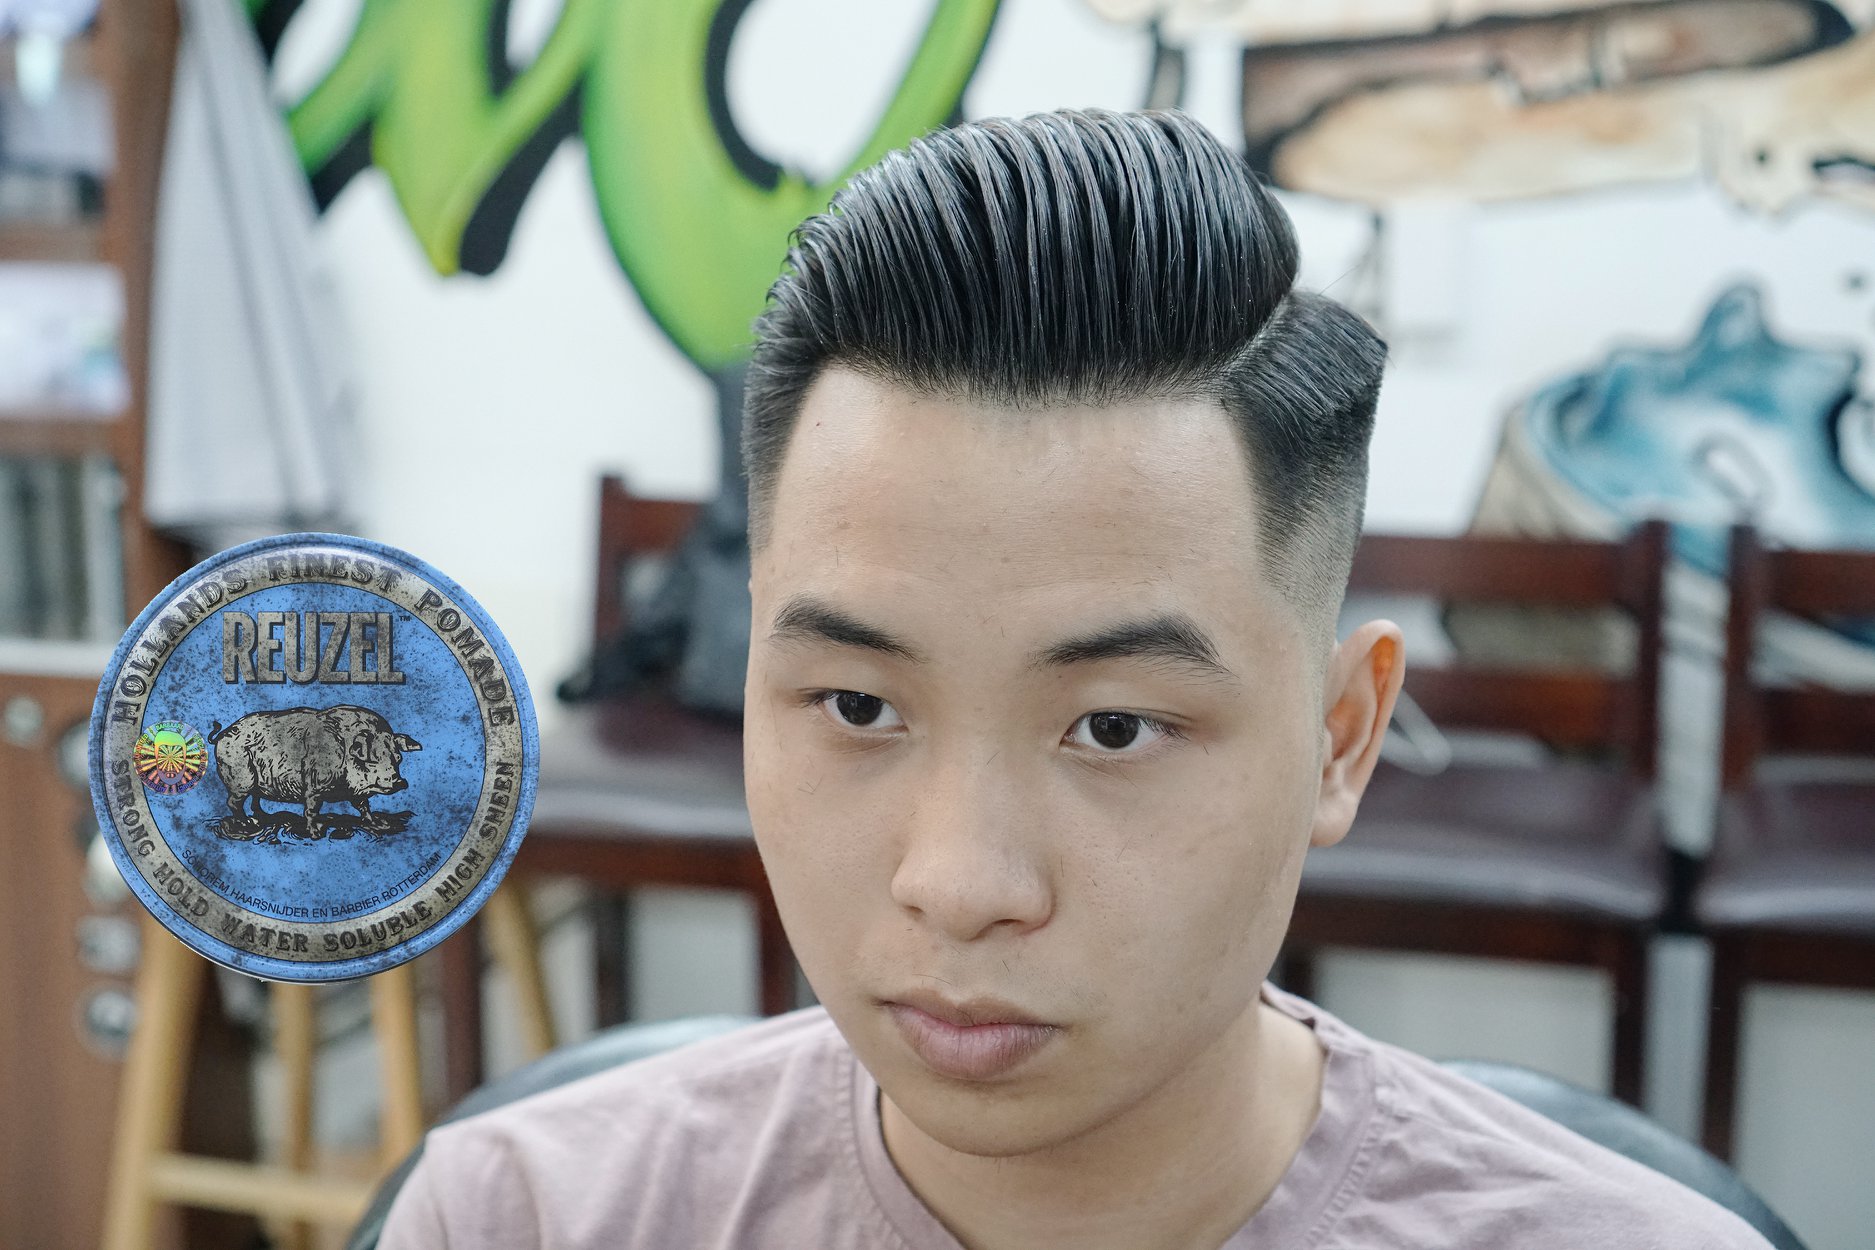 Làm nghề cắt tóc bằng một tay  Cổng Thông Tin Hội Liên hiệp Phụ nữ Việt Nam